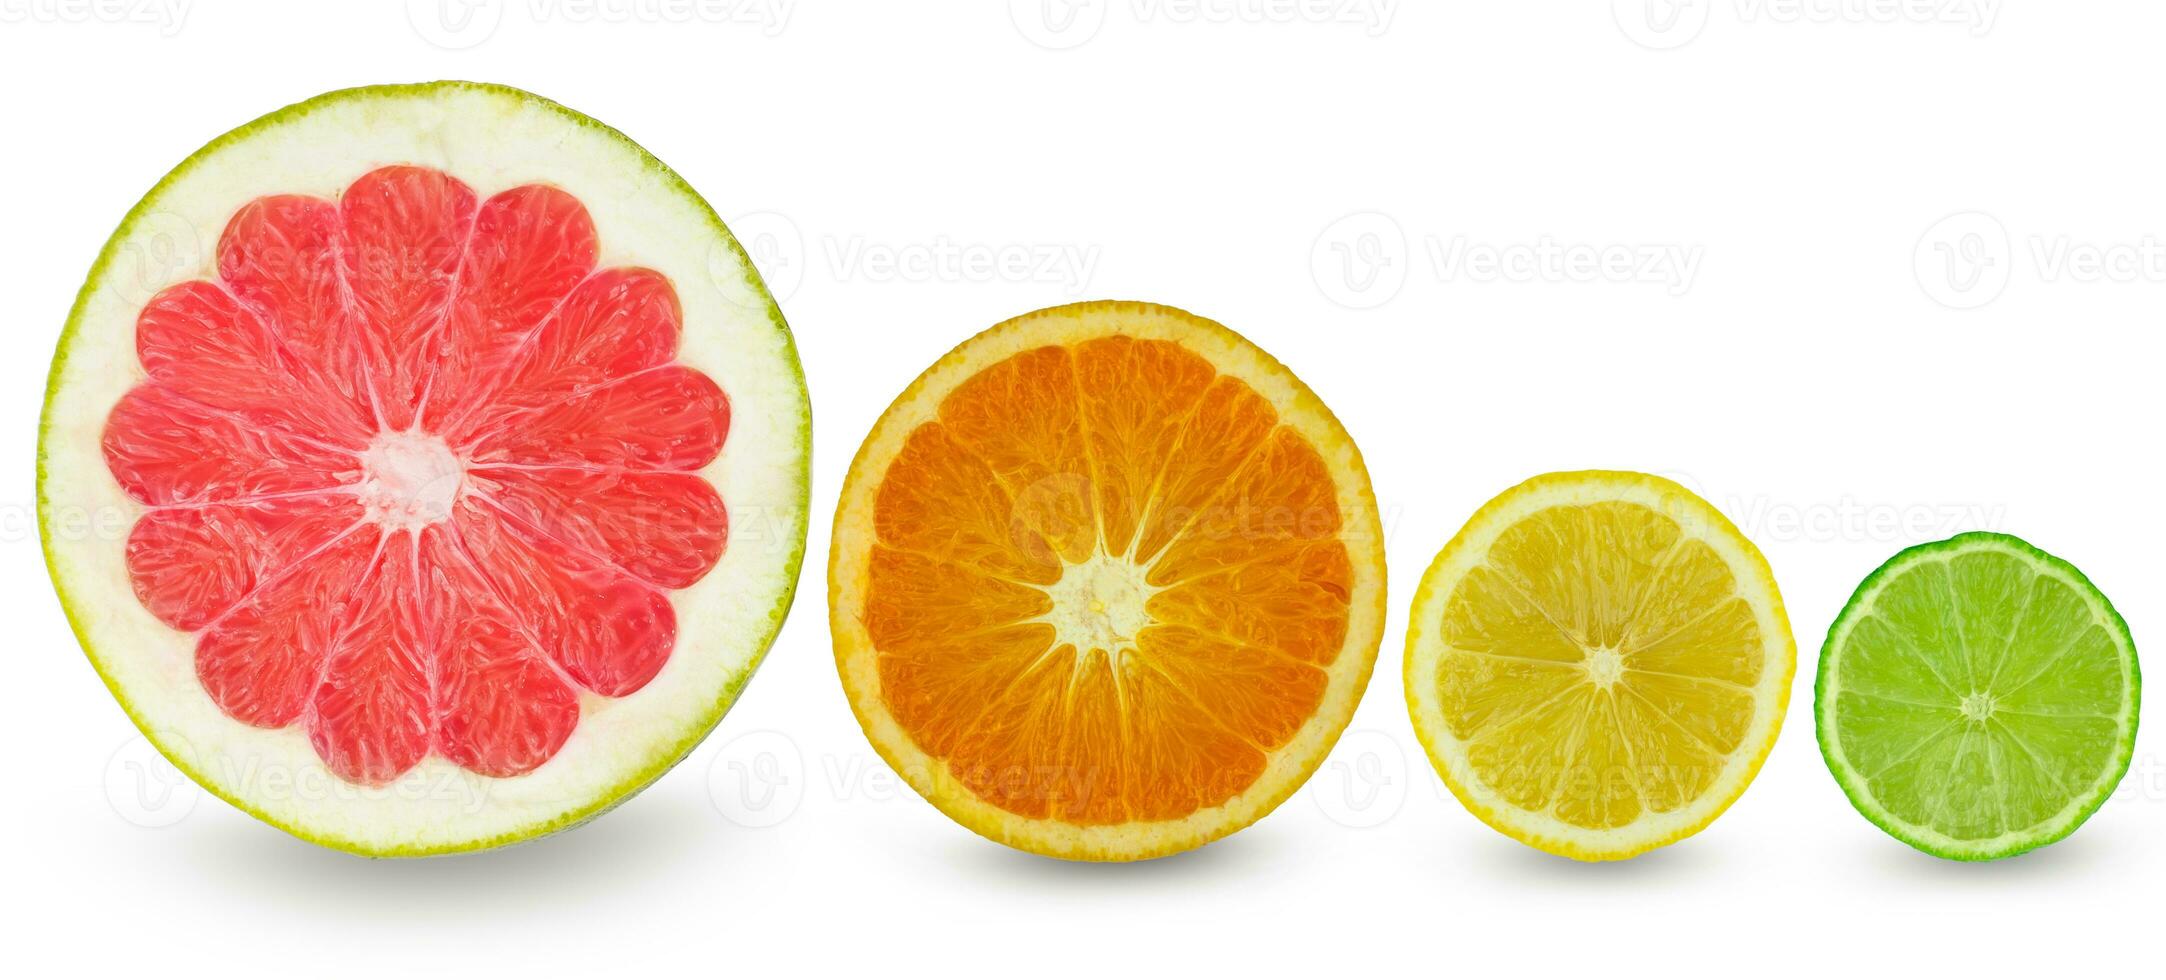 citrus schijfje grapefruit sinaasappel citroen en limoen foto